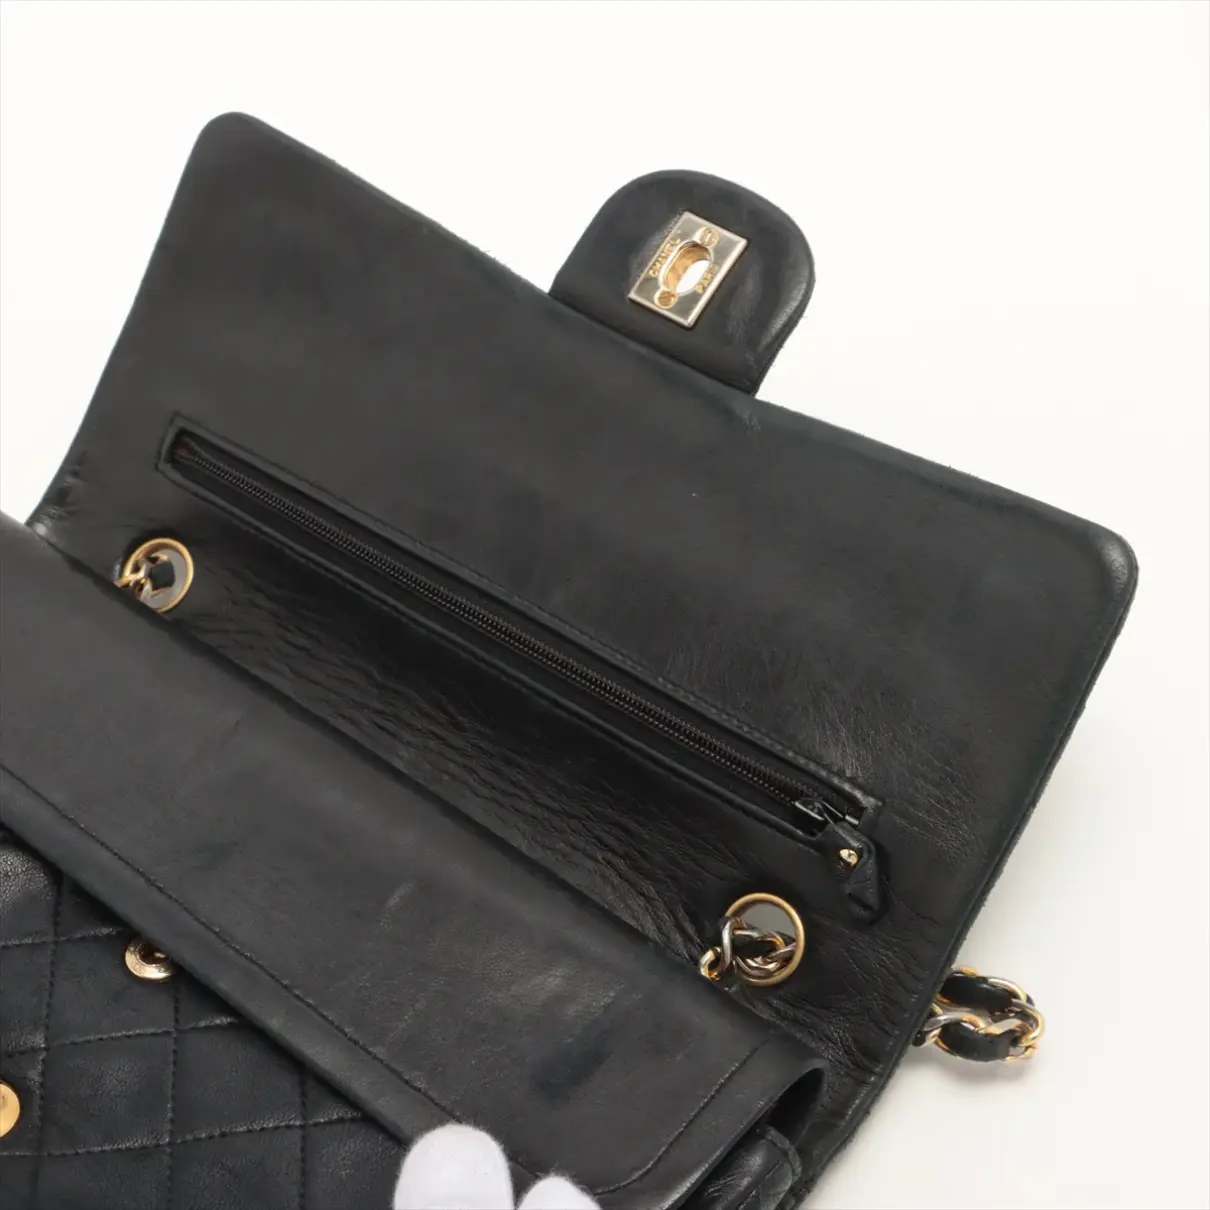 Cloth handbag Chanel - Vintage